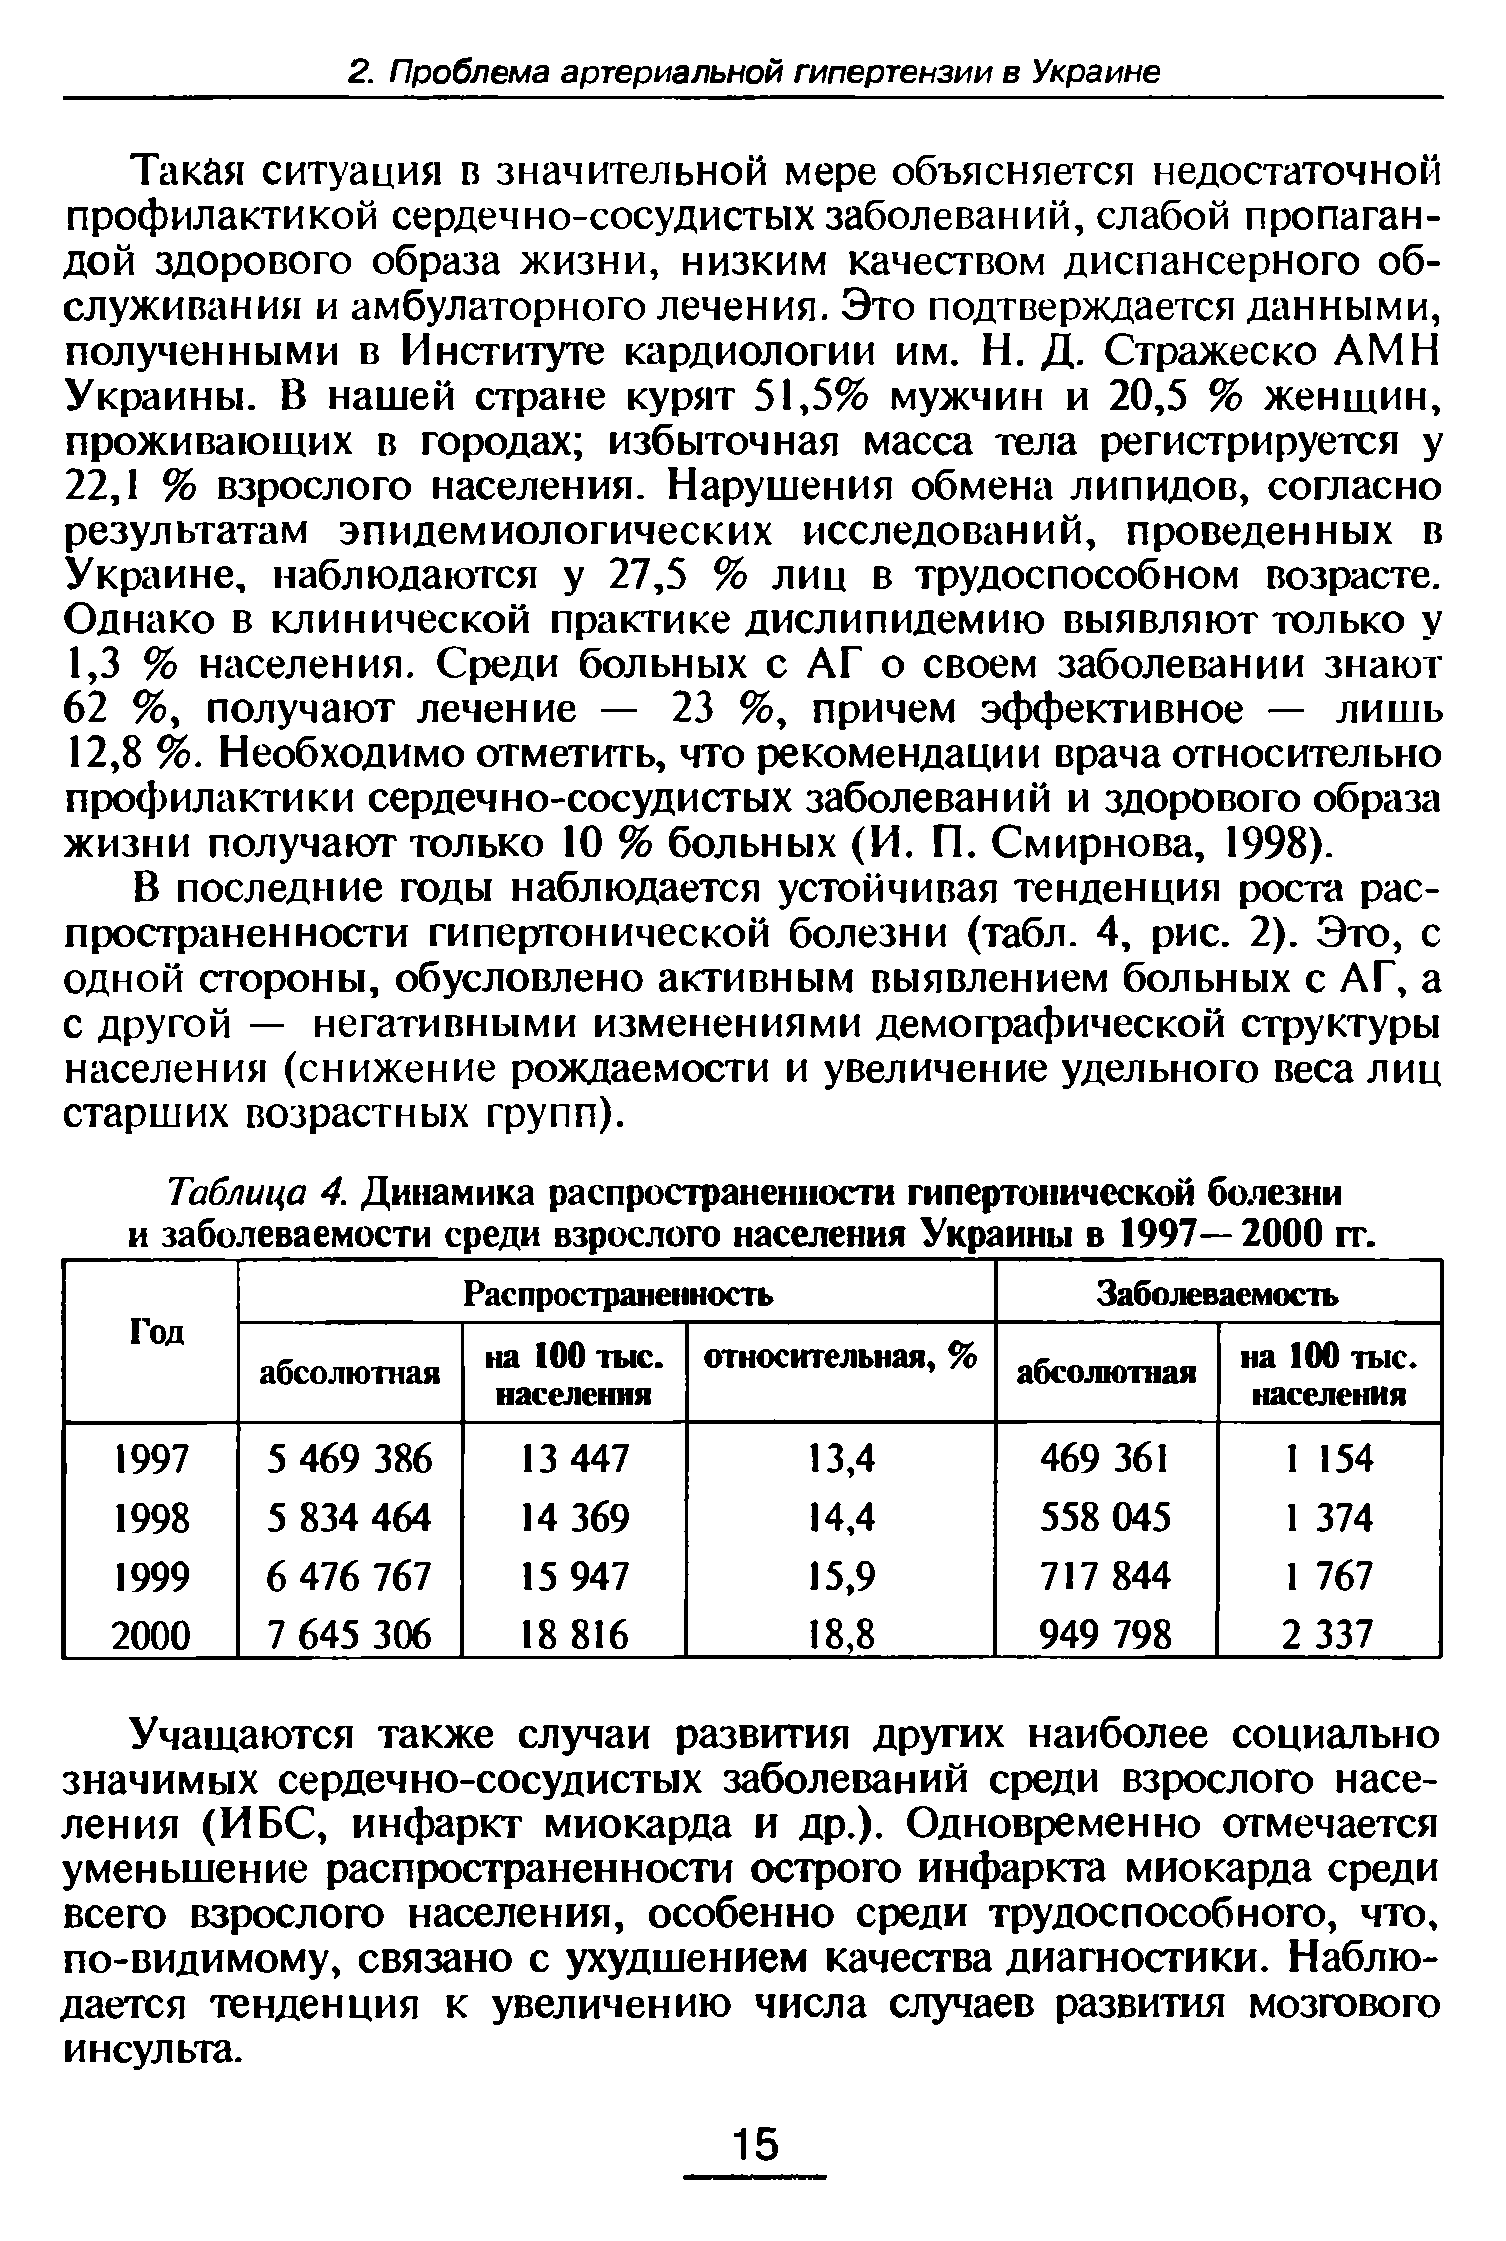 Таблица 4. Динамика распространенности гипертонической болезни и заболеваемости среди взрослого населения Украины в 1997— 2000 гг.